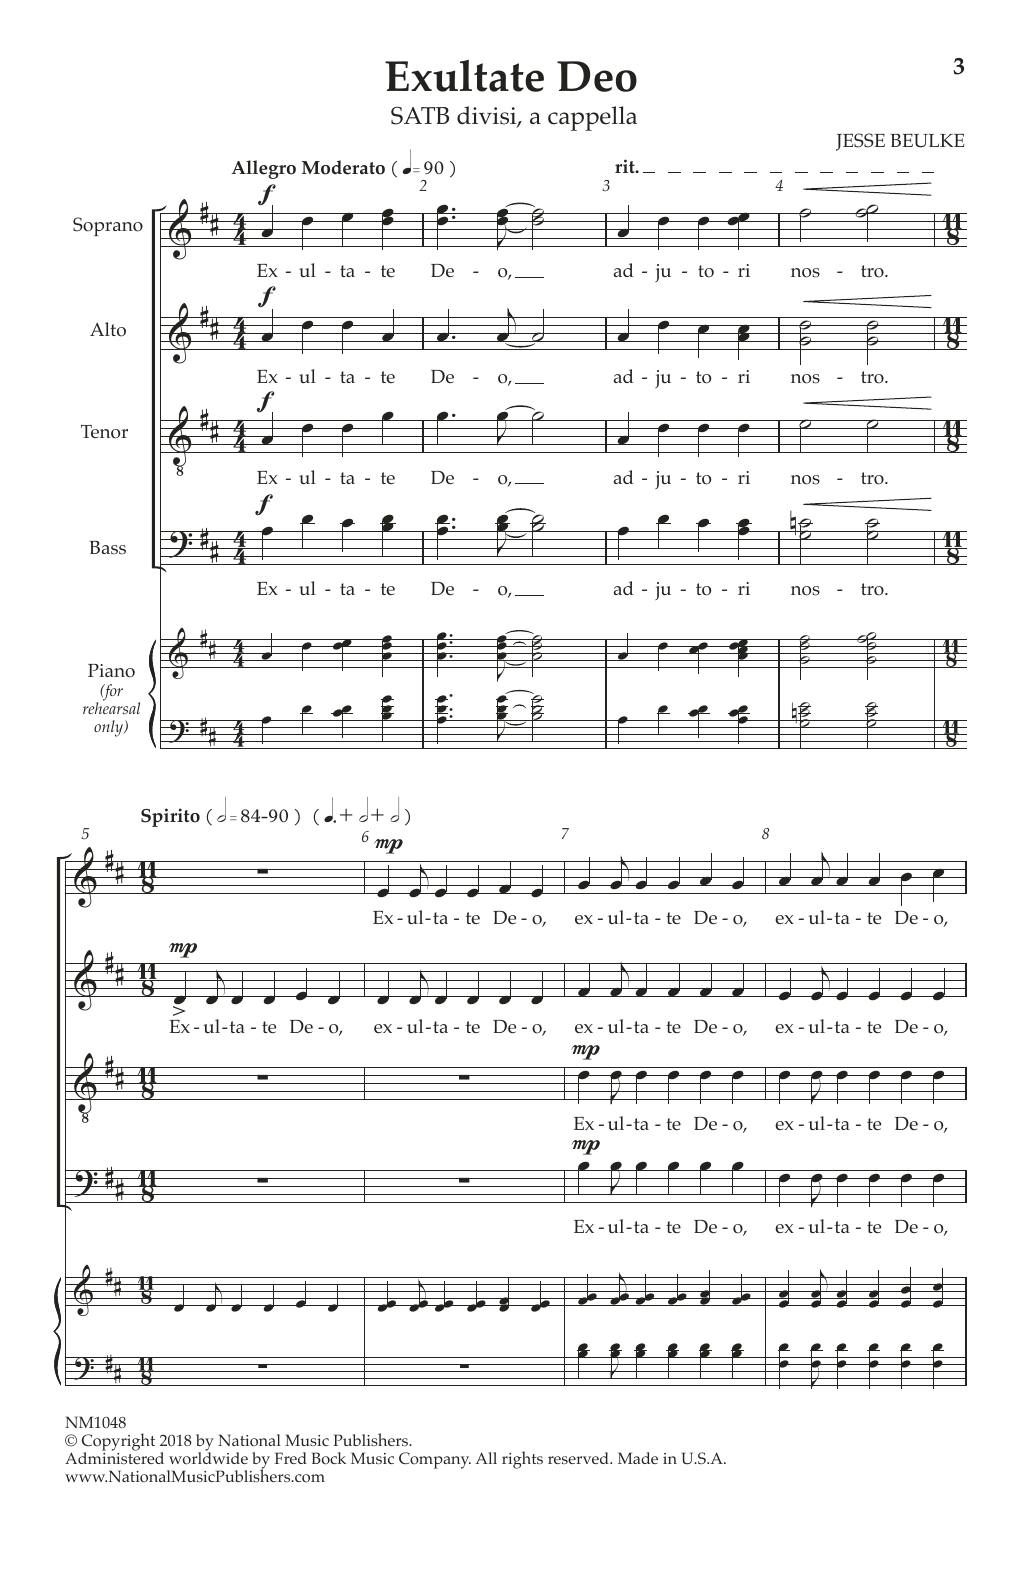 Exultate Deo (SATB Choir) von Jesse Beulke